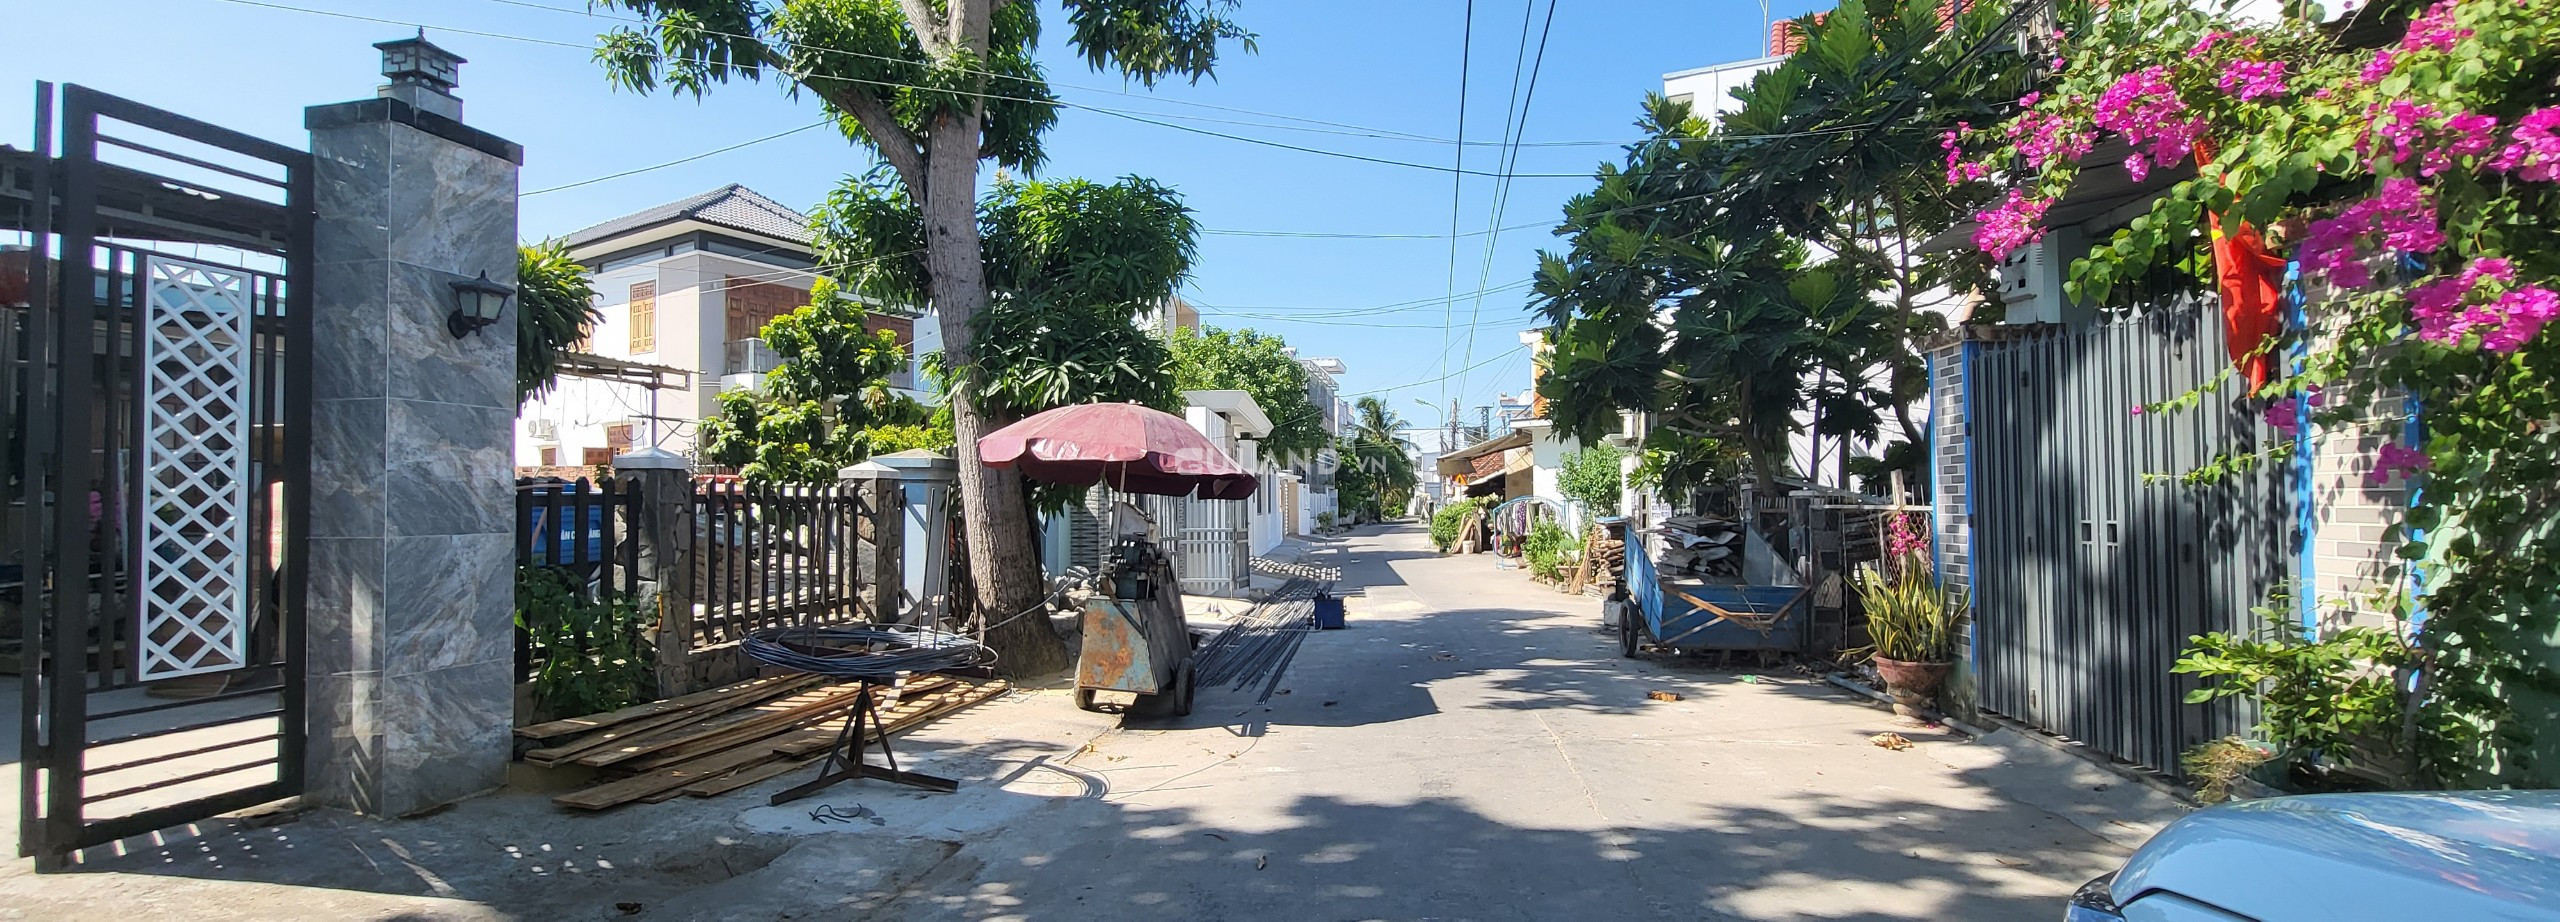 Bán biệt thự Mini xã Vĩnh Trung TP Nha Trang. Khu dân cư văn mình, xung quanh nhiều căn biệt thự khác.